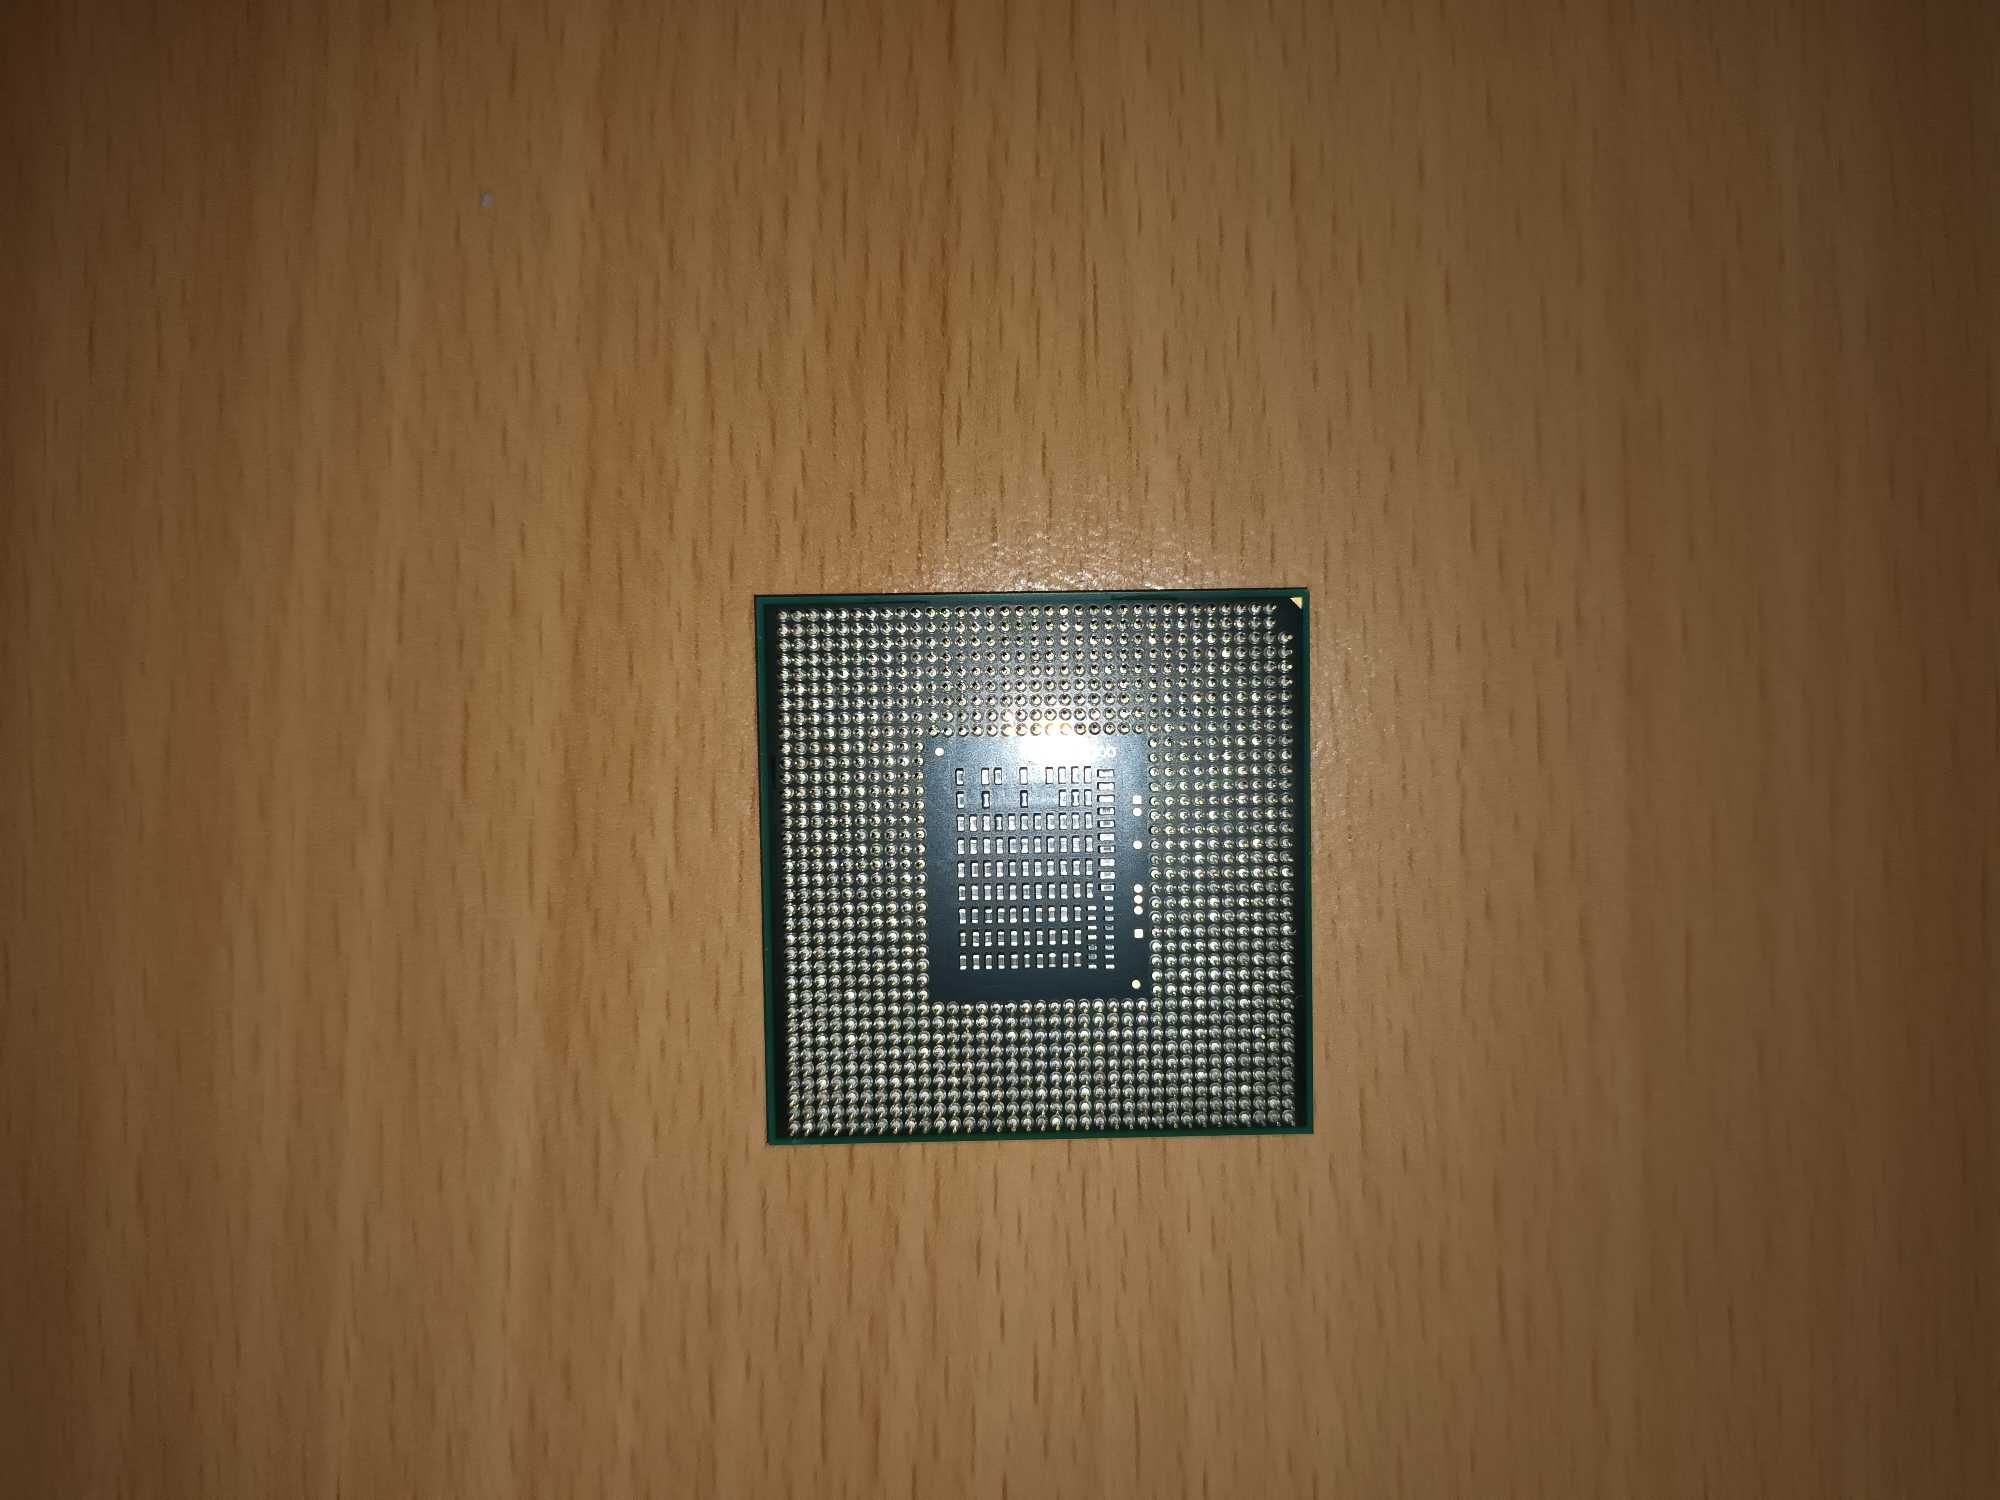 Processador Intel Pentium B970 para portáteis (2,30 GHz)